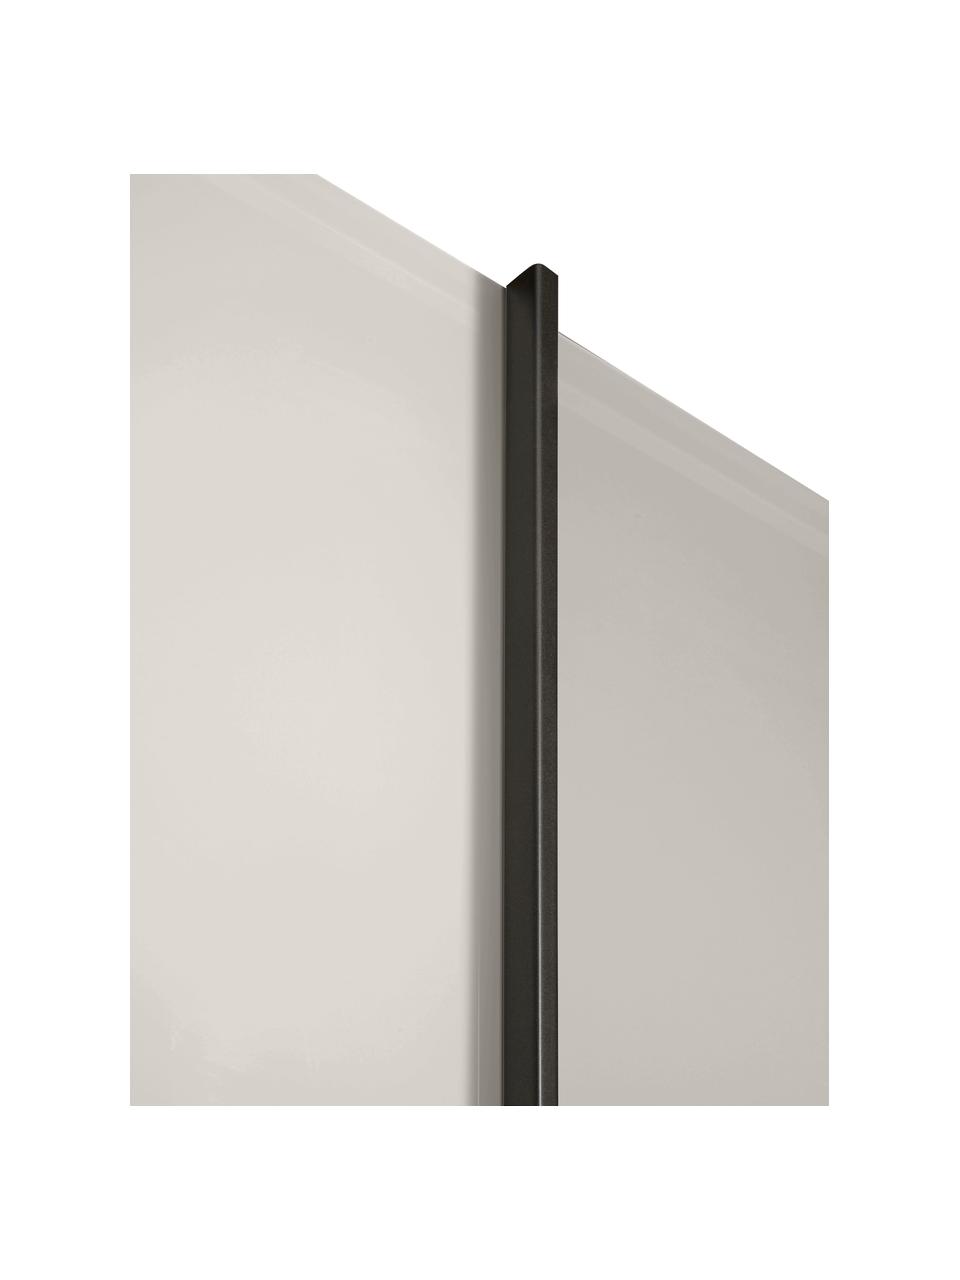 Armario Monaco, 2 puertas correderas, Tablero de fibras de densidad media (MDF), Champán, gris plateado, pizarra, An 197 x Al 217 cm